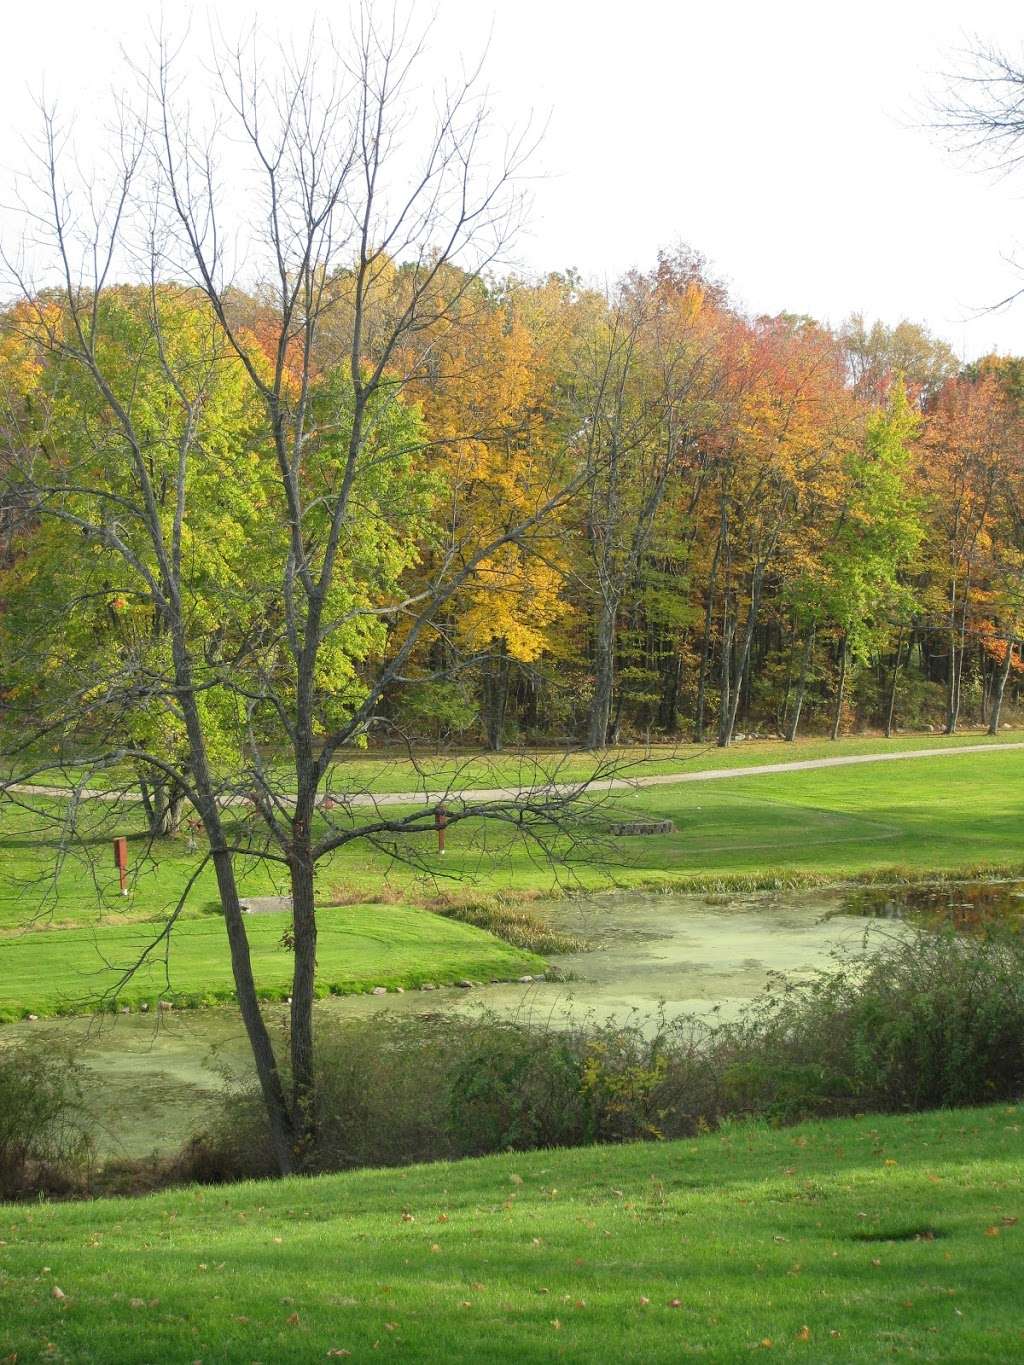 Culver Lake Golf Course | 125 E Shore Culver Rd, Branchville, NJ 07826, USA | Phone: (973) 948-5610